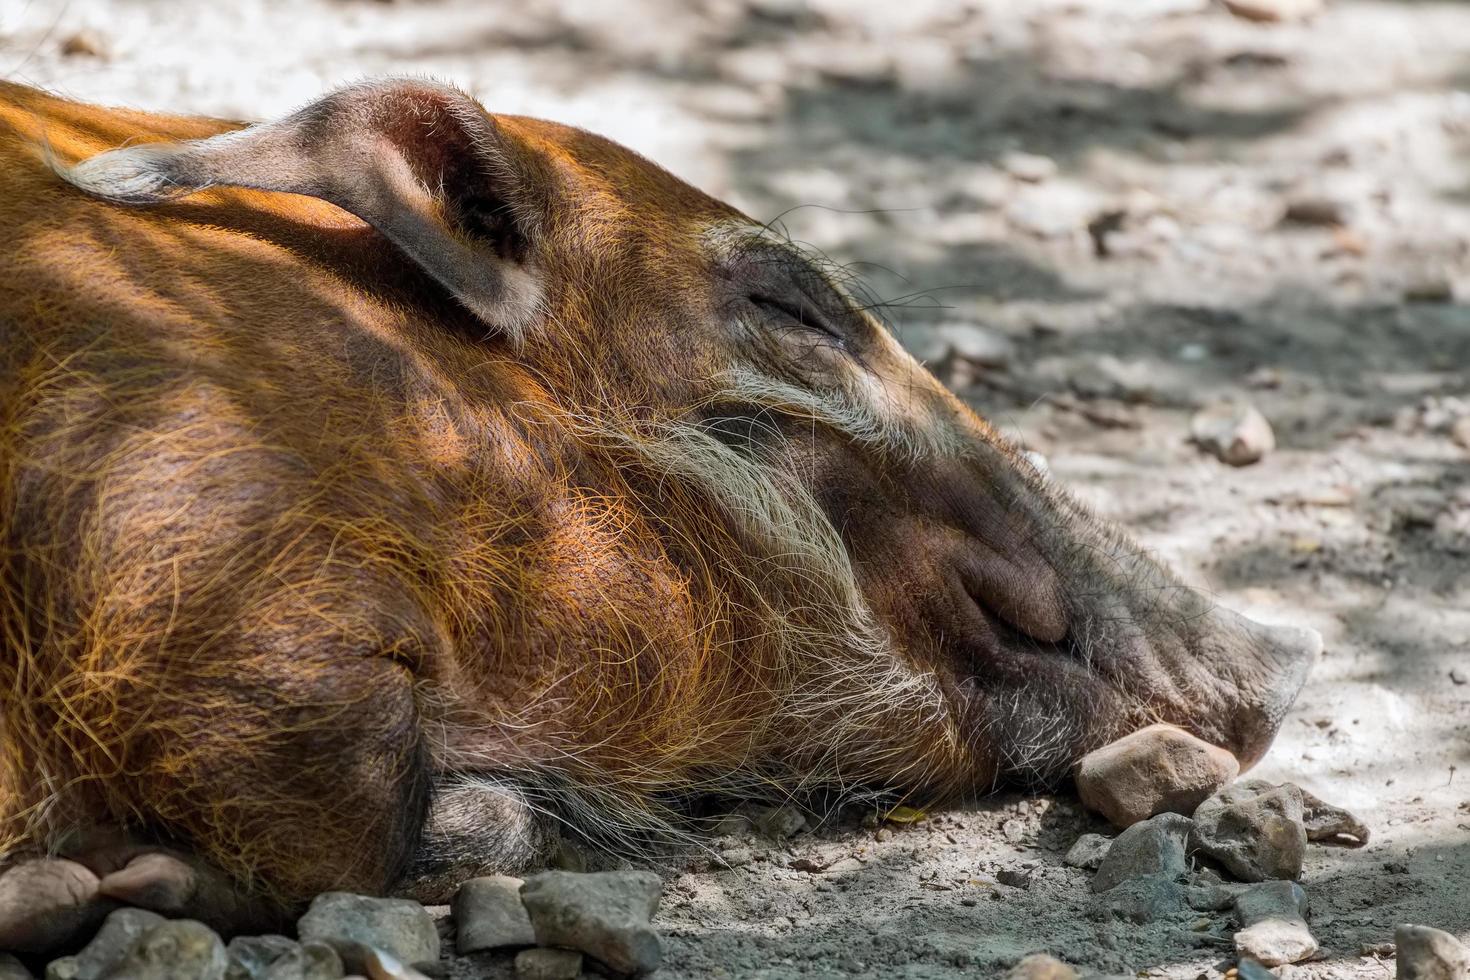 bekesbourne, kent, uk, 2014. rood riviervarken in slaap op de grond foto